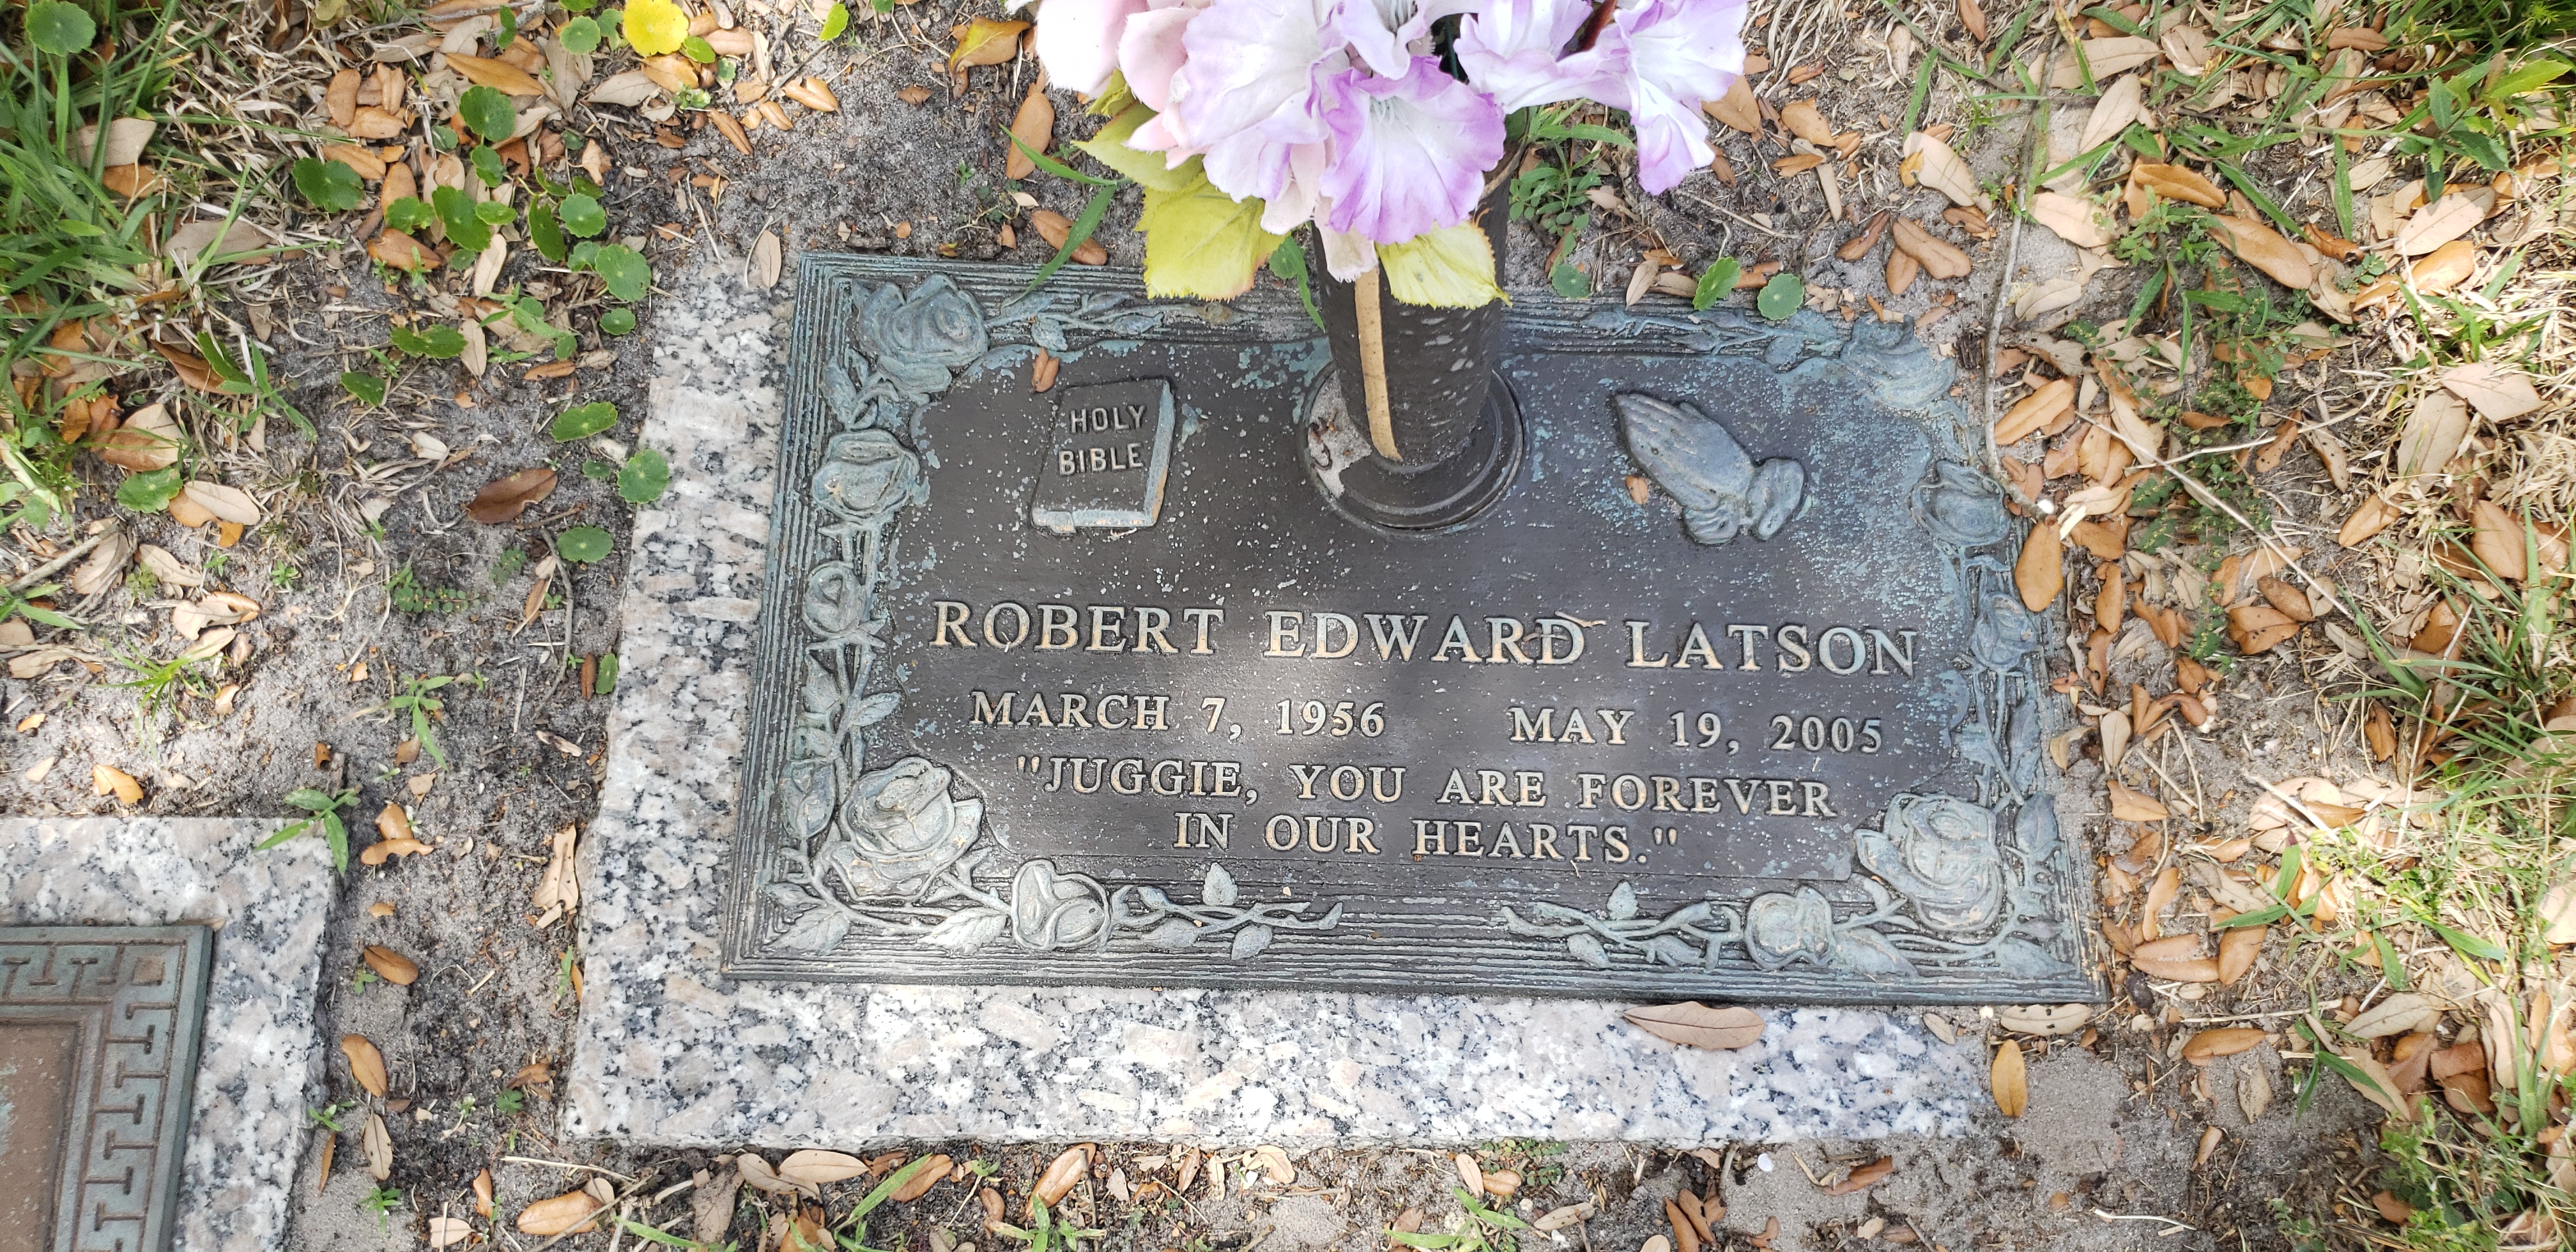 Robert Edward Latson